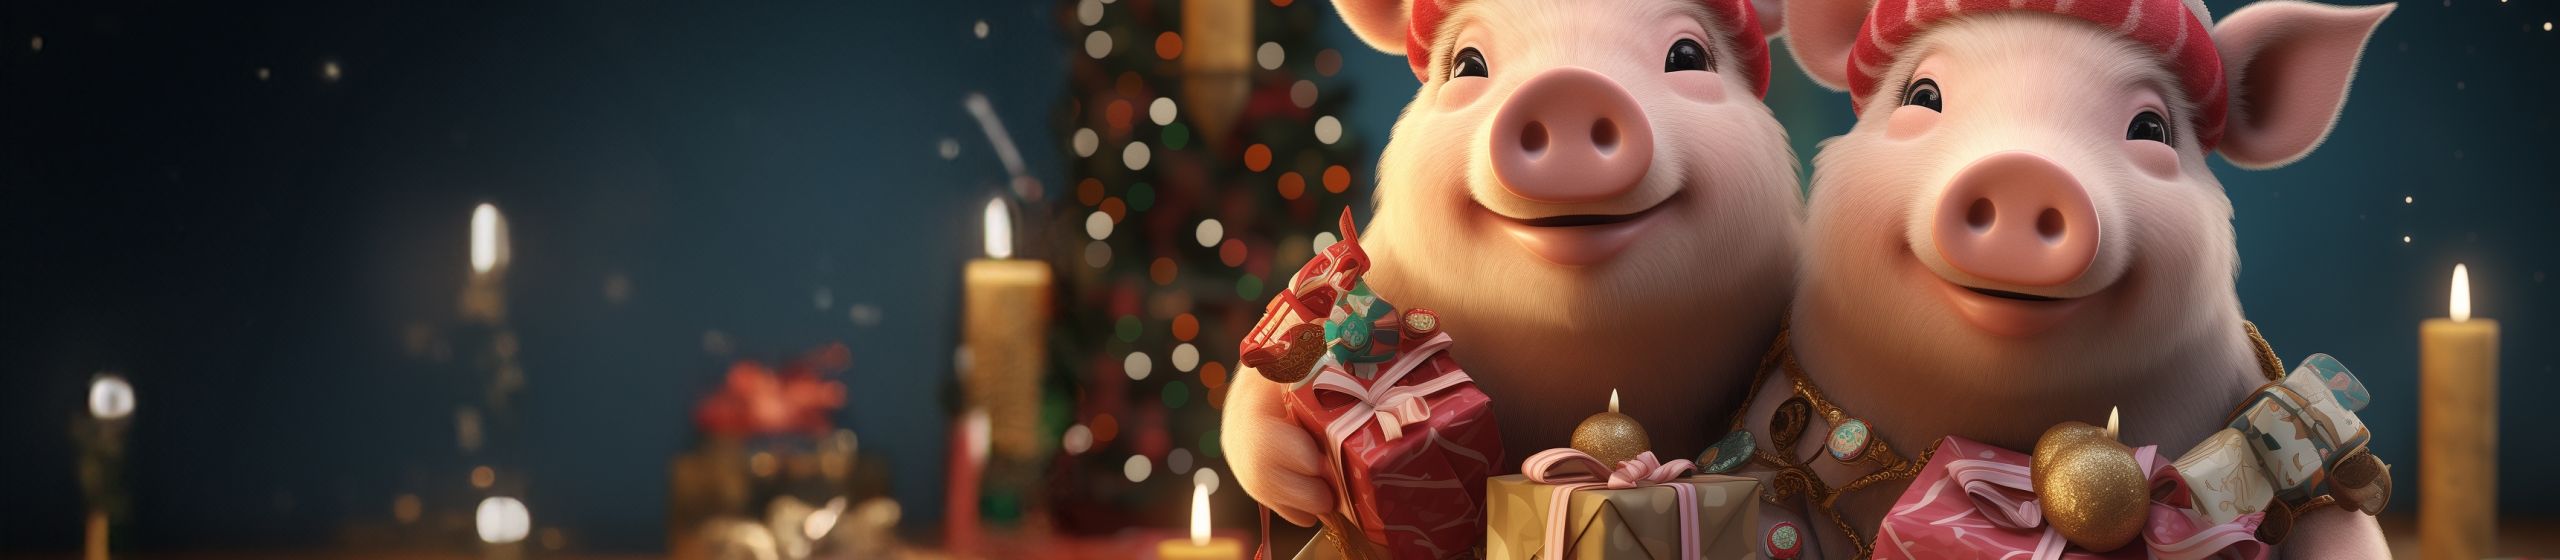 Twee varkens met kerstmutsen bij een kerstboom met cadeautjes